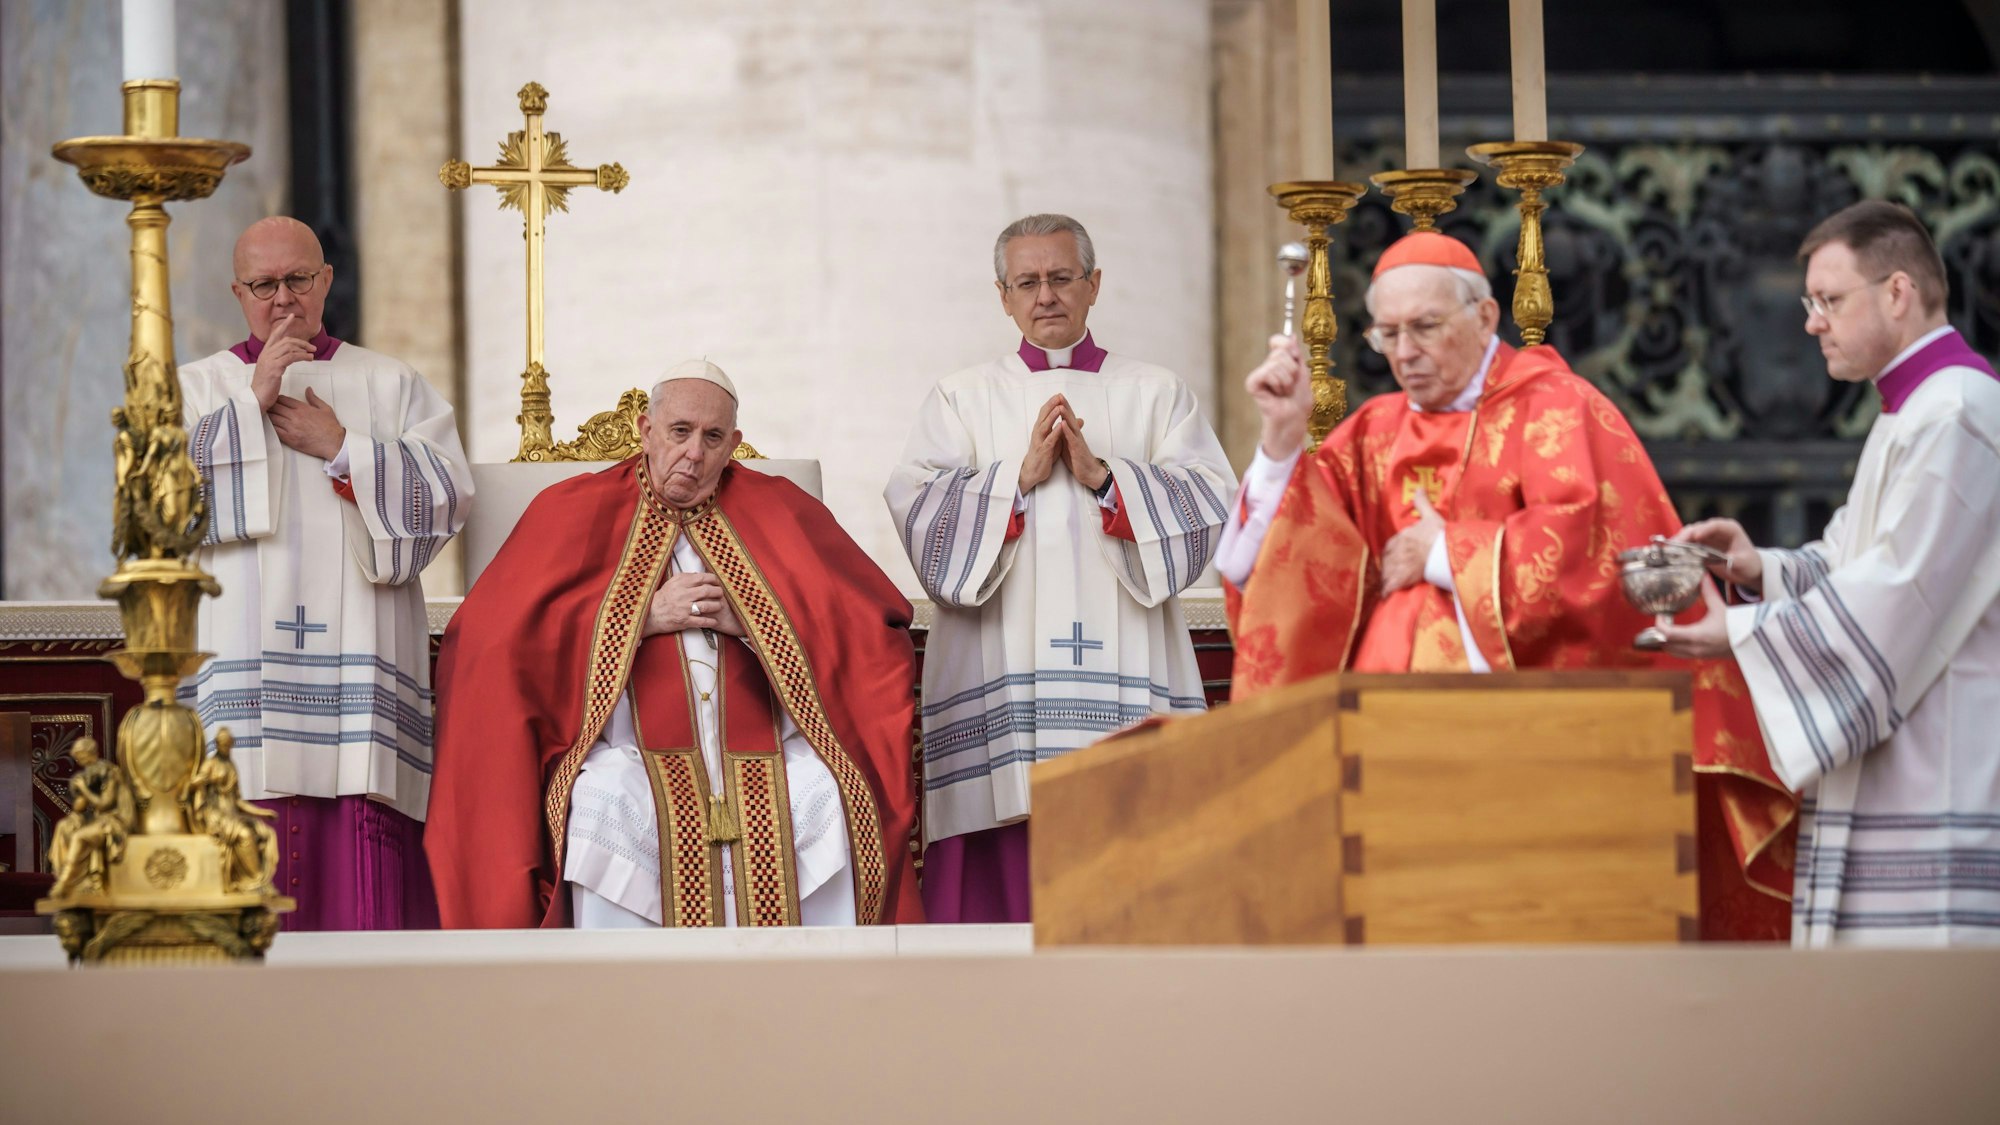 Kardinal Giovanni Battista Re (2.v.r.) am Sarg des verstorbenen emeritierten Papstes Benedikt XVI. während der öffentlichen Trauermesse für den emeritierten Papst Benedikt XVI. auf dem Petersplatz in Rom. Dahinter sitzt der amtierende Papst Franziskus  (2.v.l.).